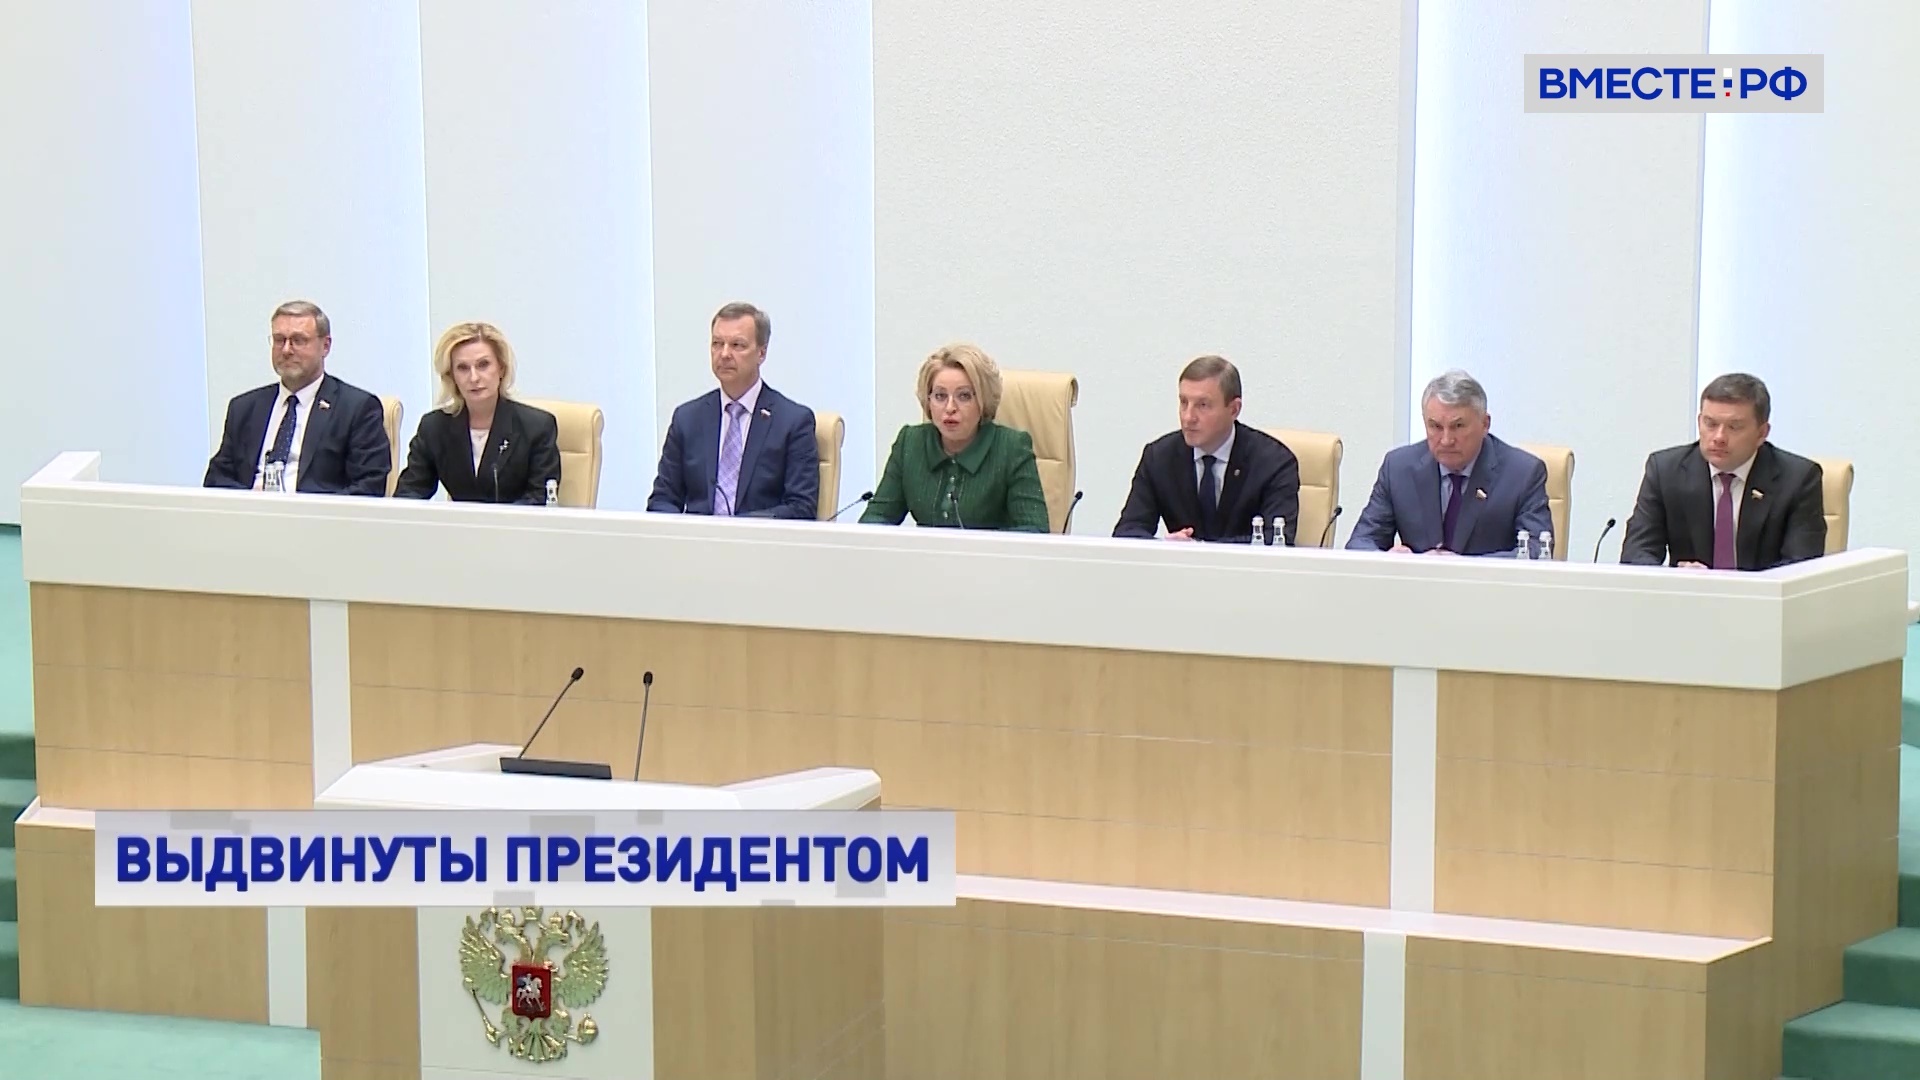 Матвиенко пожелала успехов новому кабинету министров